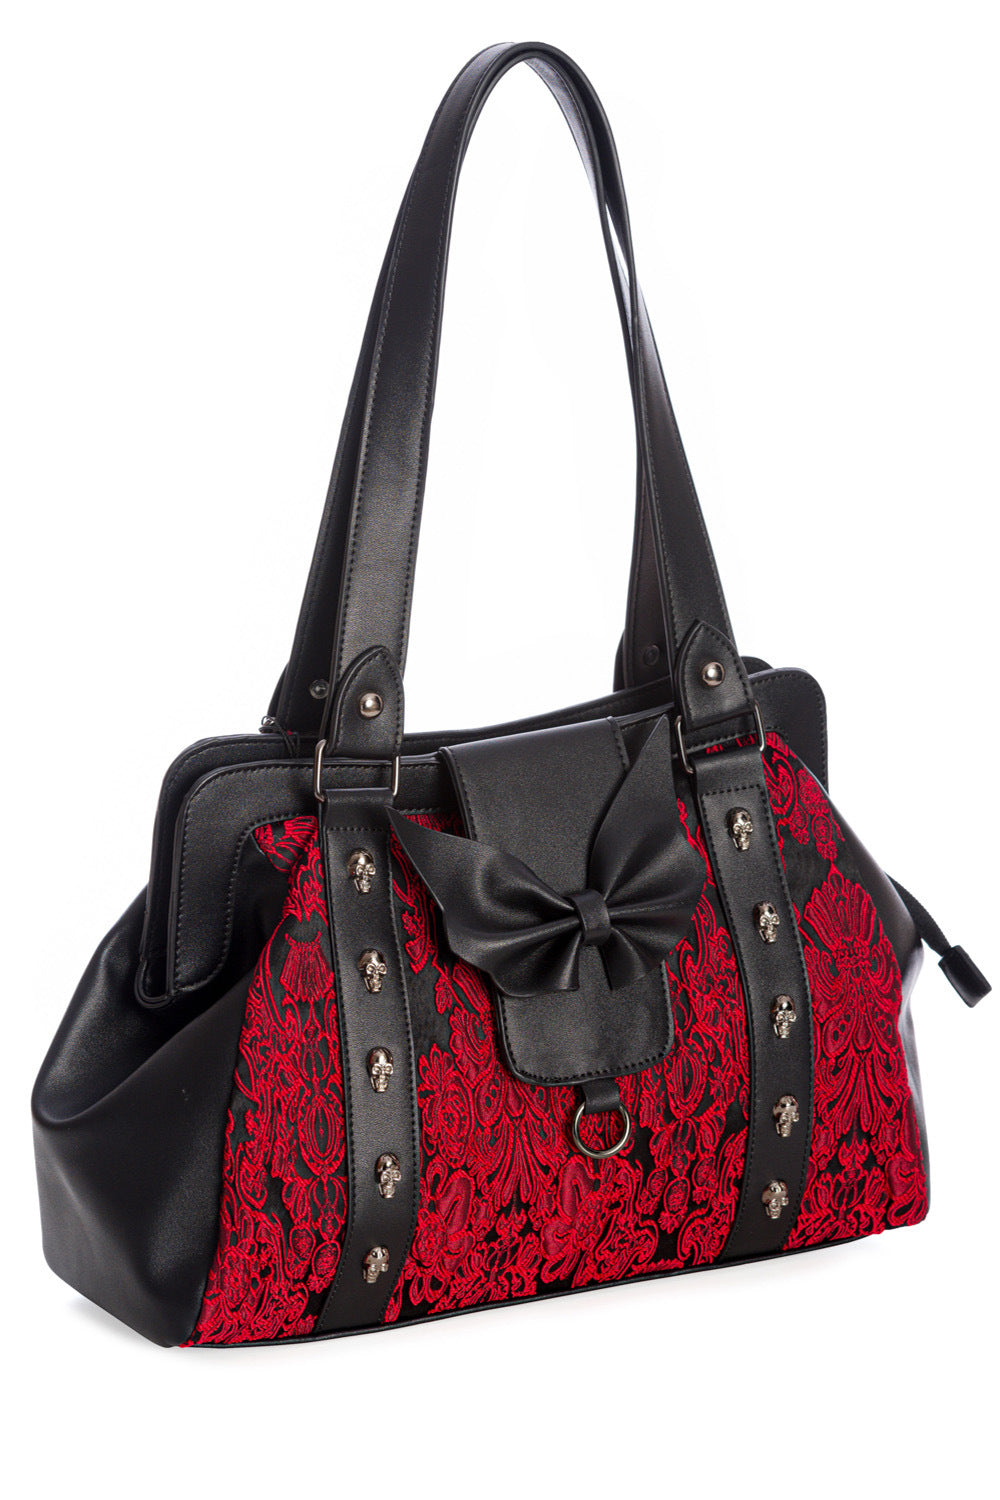 Maplesage Handtasche rot-schwarz